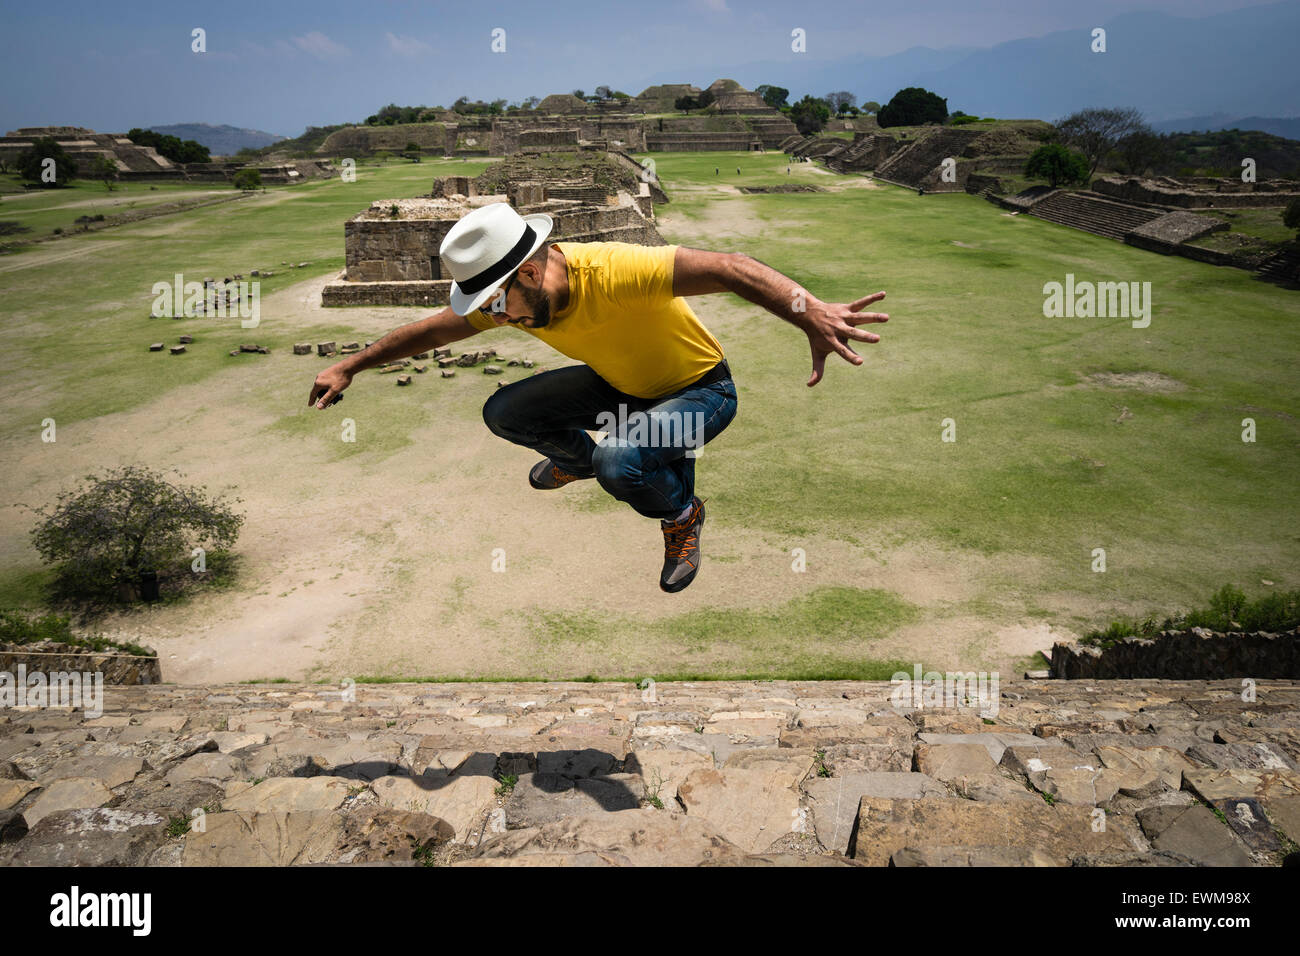 Hispanic Mann springt in die Luft über die steinernen Stufen von Monte Alban Ruinen in Mexiko Stockfoto